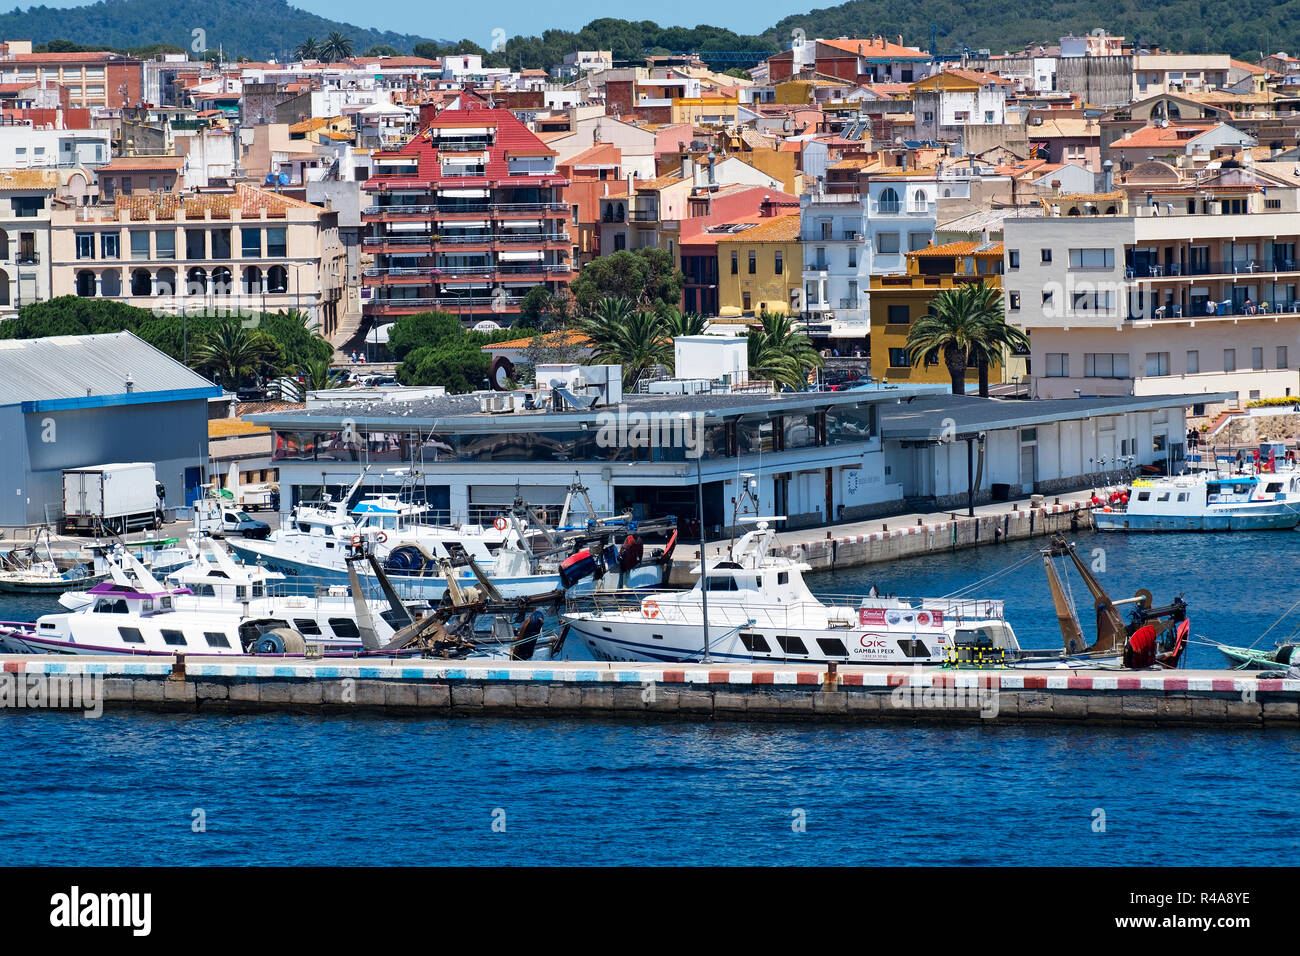 hotels and apartments around the harbor, marina at palamos, girona, costa brava, spain, catalonia, Stock Photo